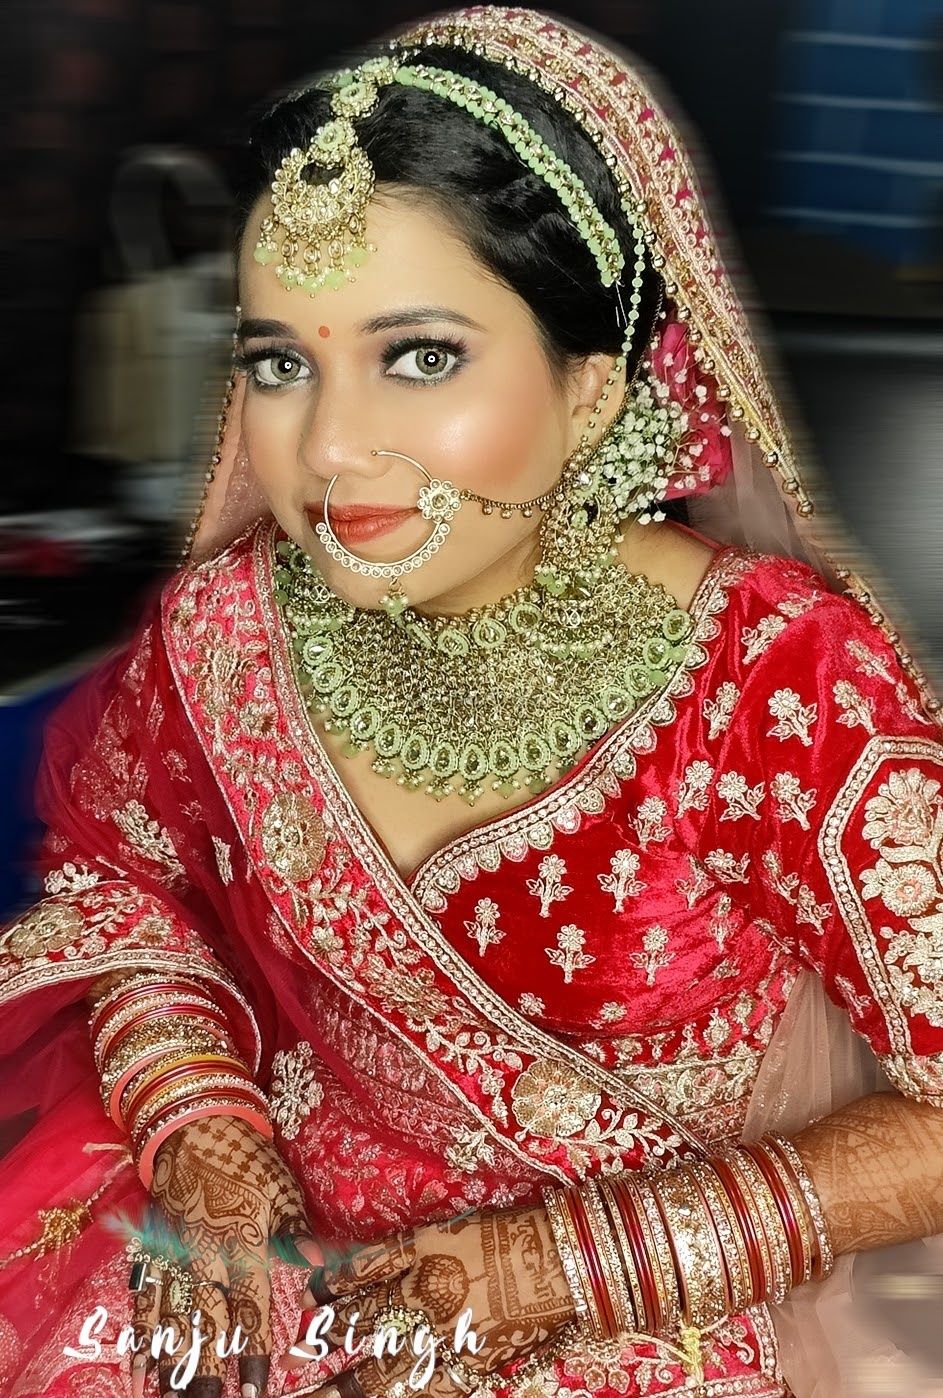 Photo From Airbrush bridal makeup - By Sanjana Sanju - Make Up Artist